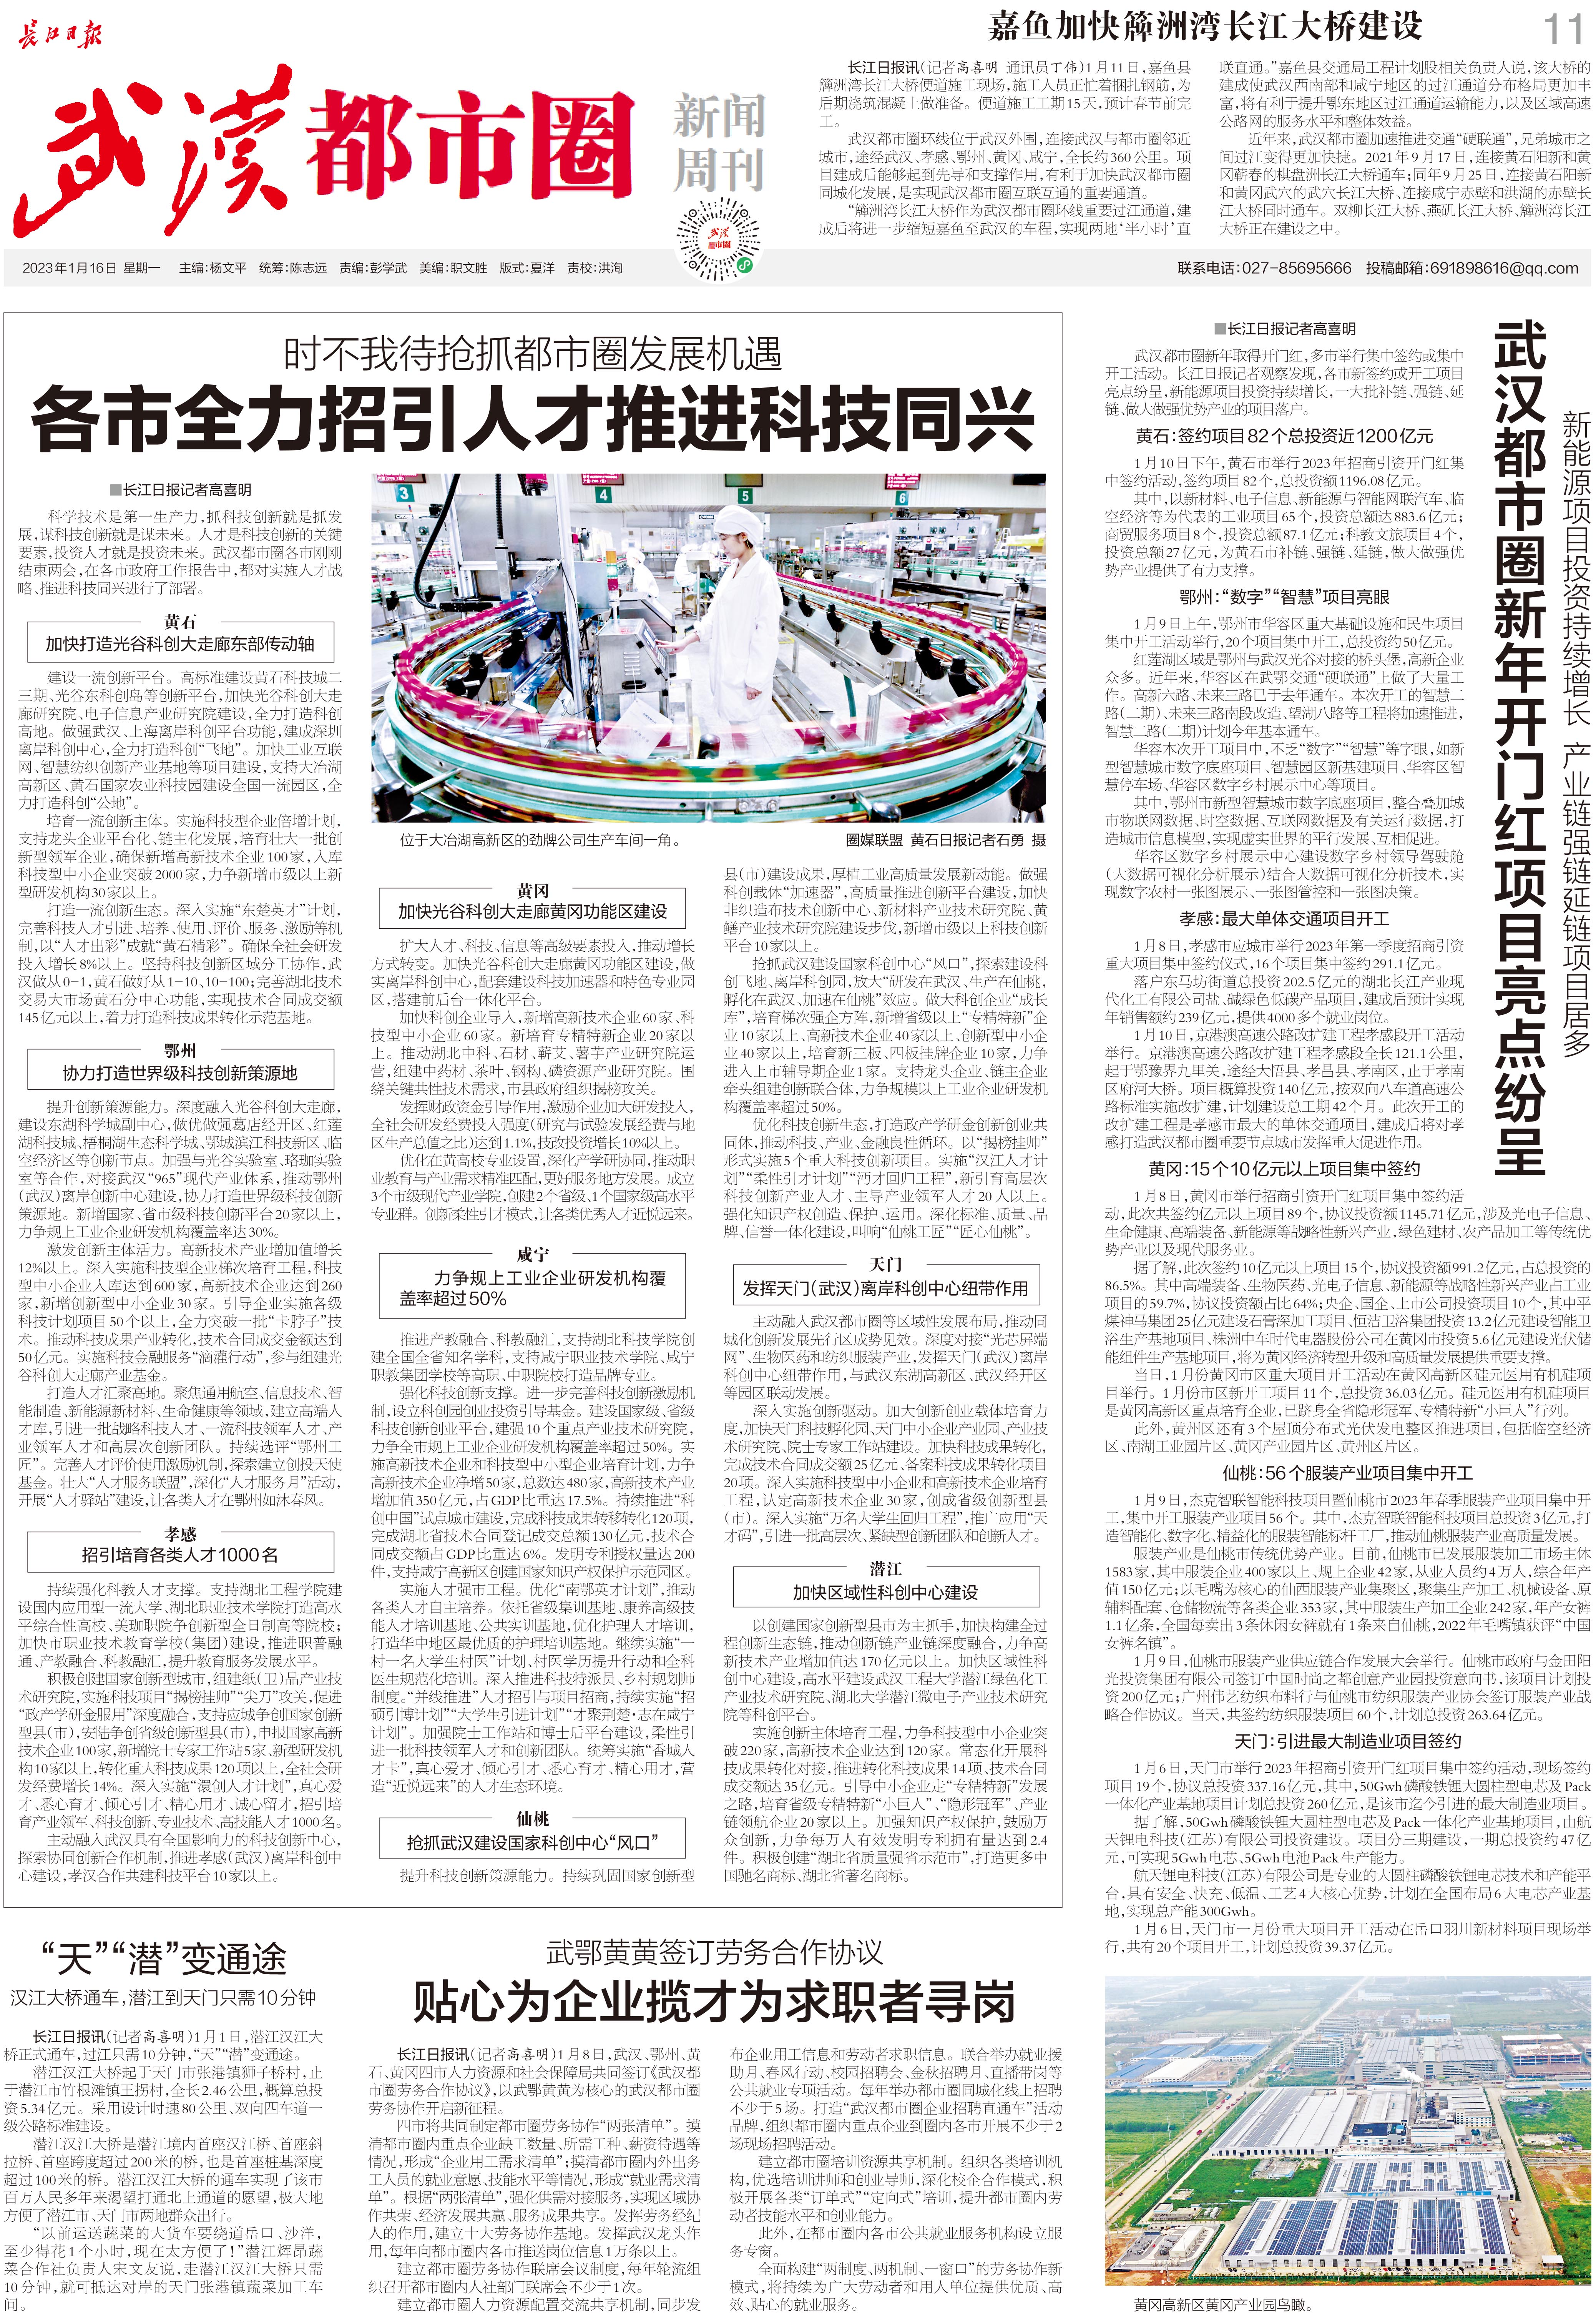 九城同心向未来长江日报武汉都市圈新闻周刊2023年1月16日第41期报纸